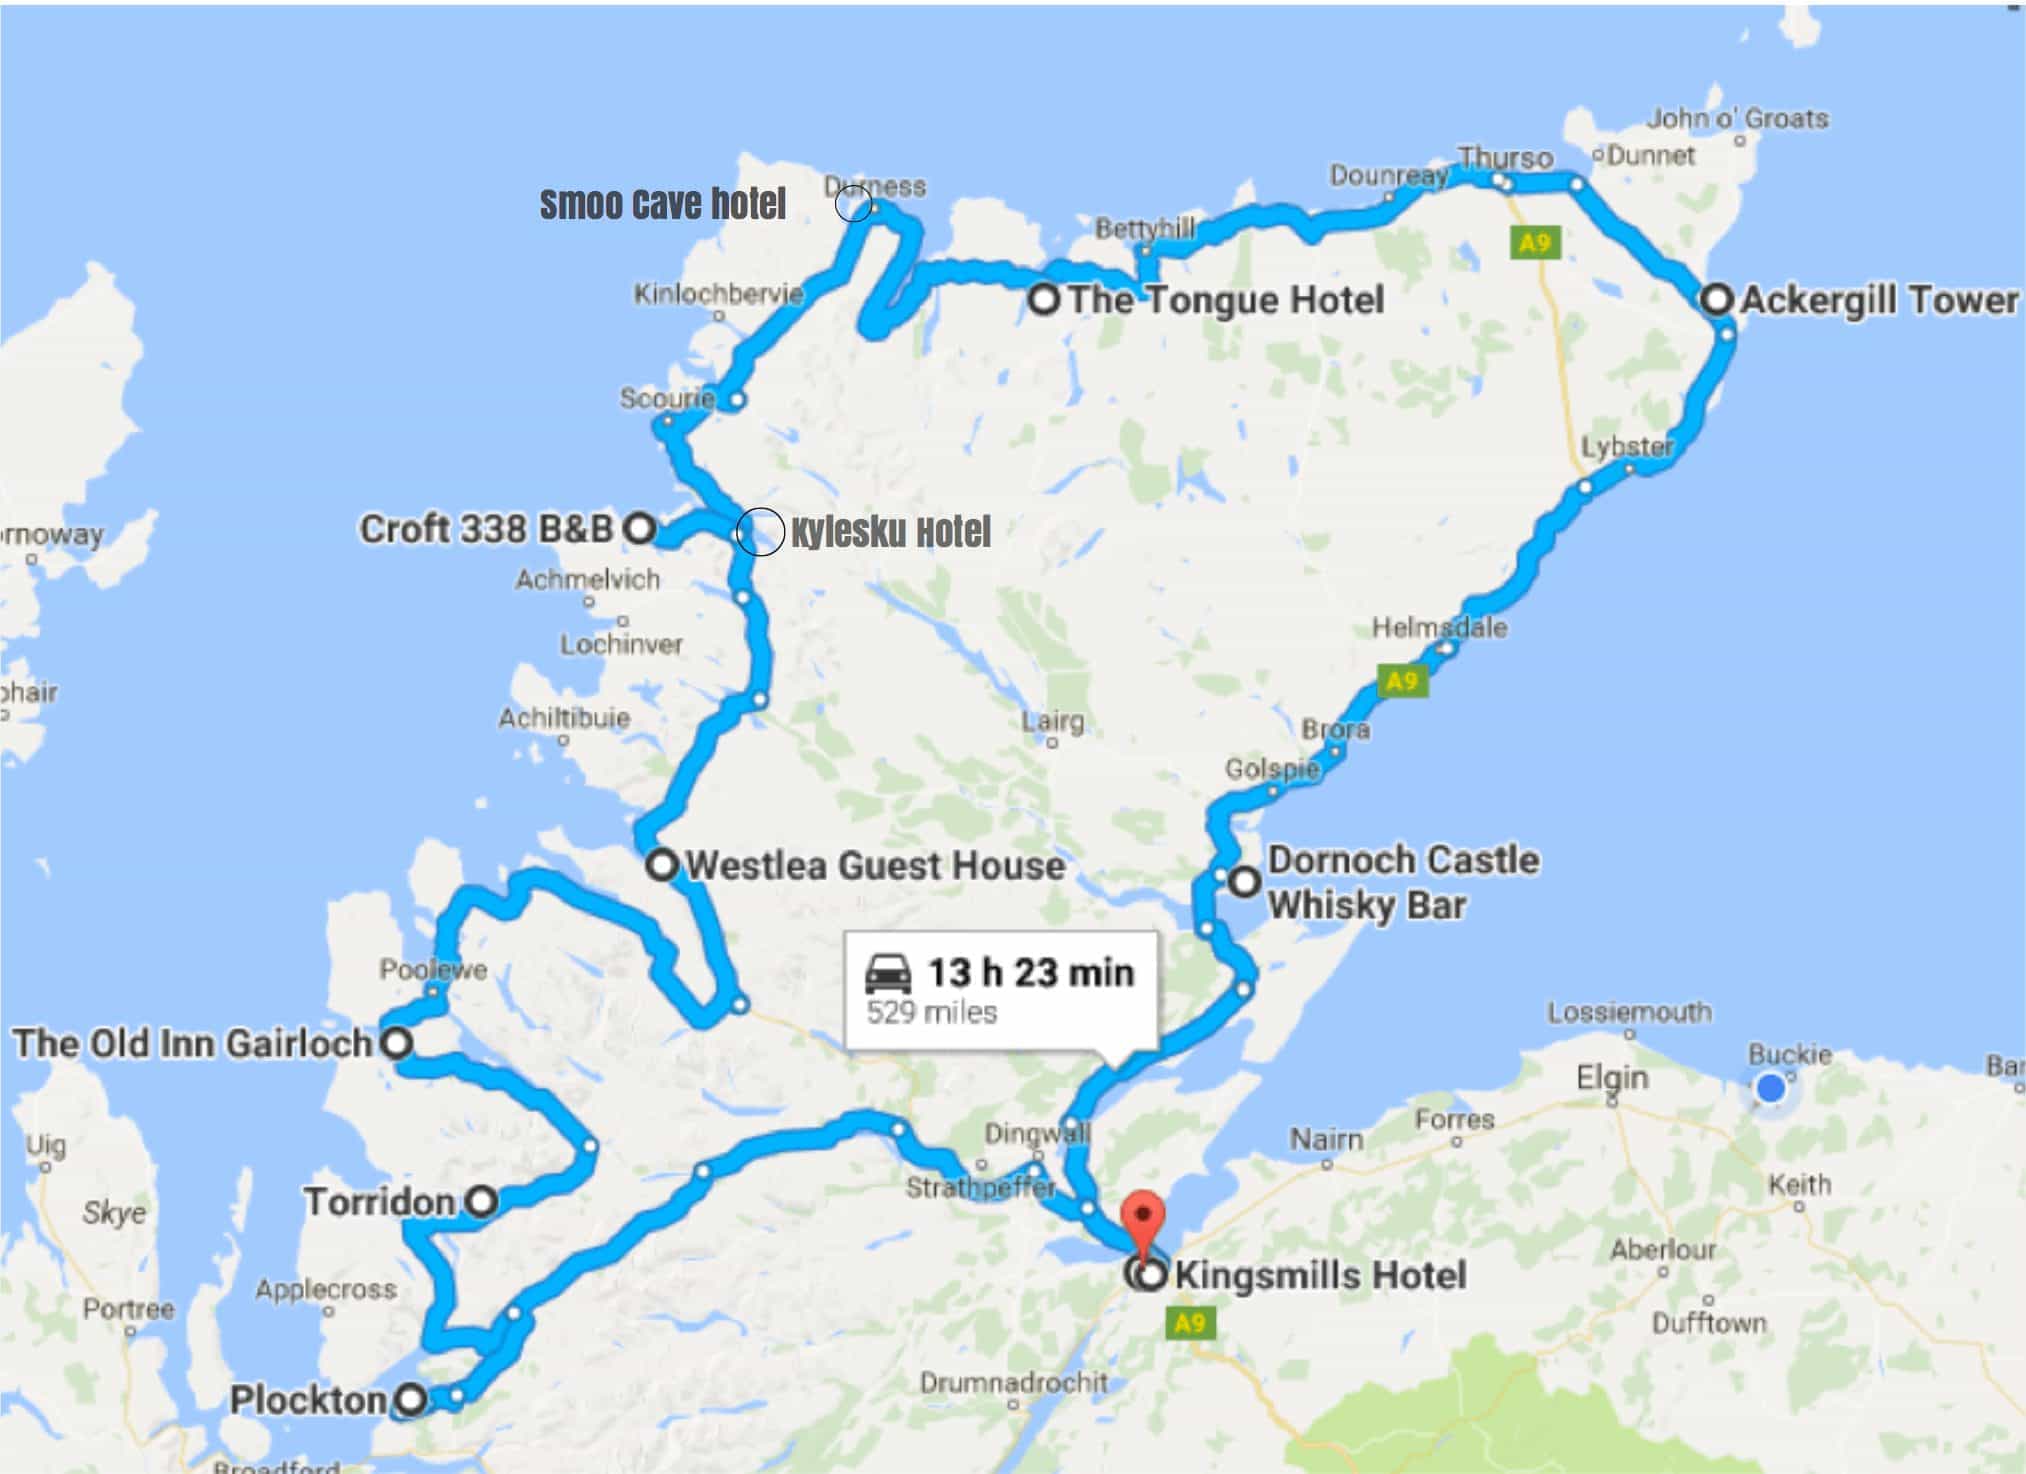 visit scotland route 500